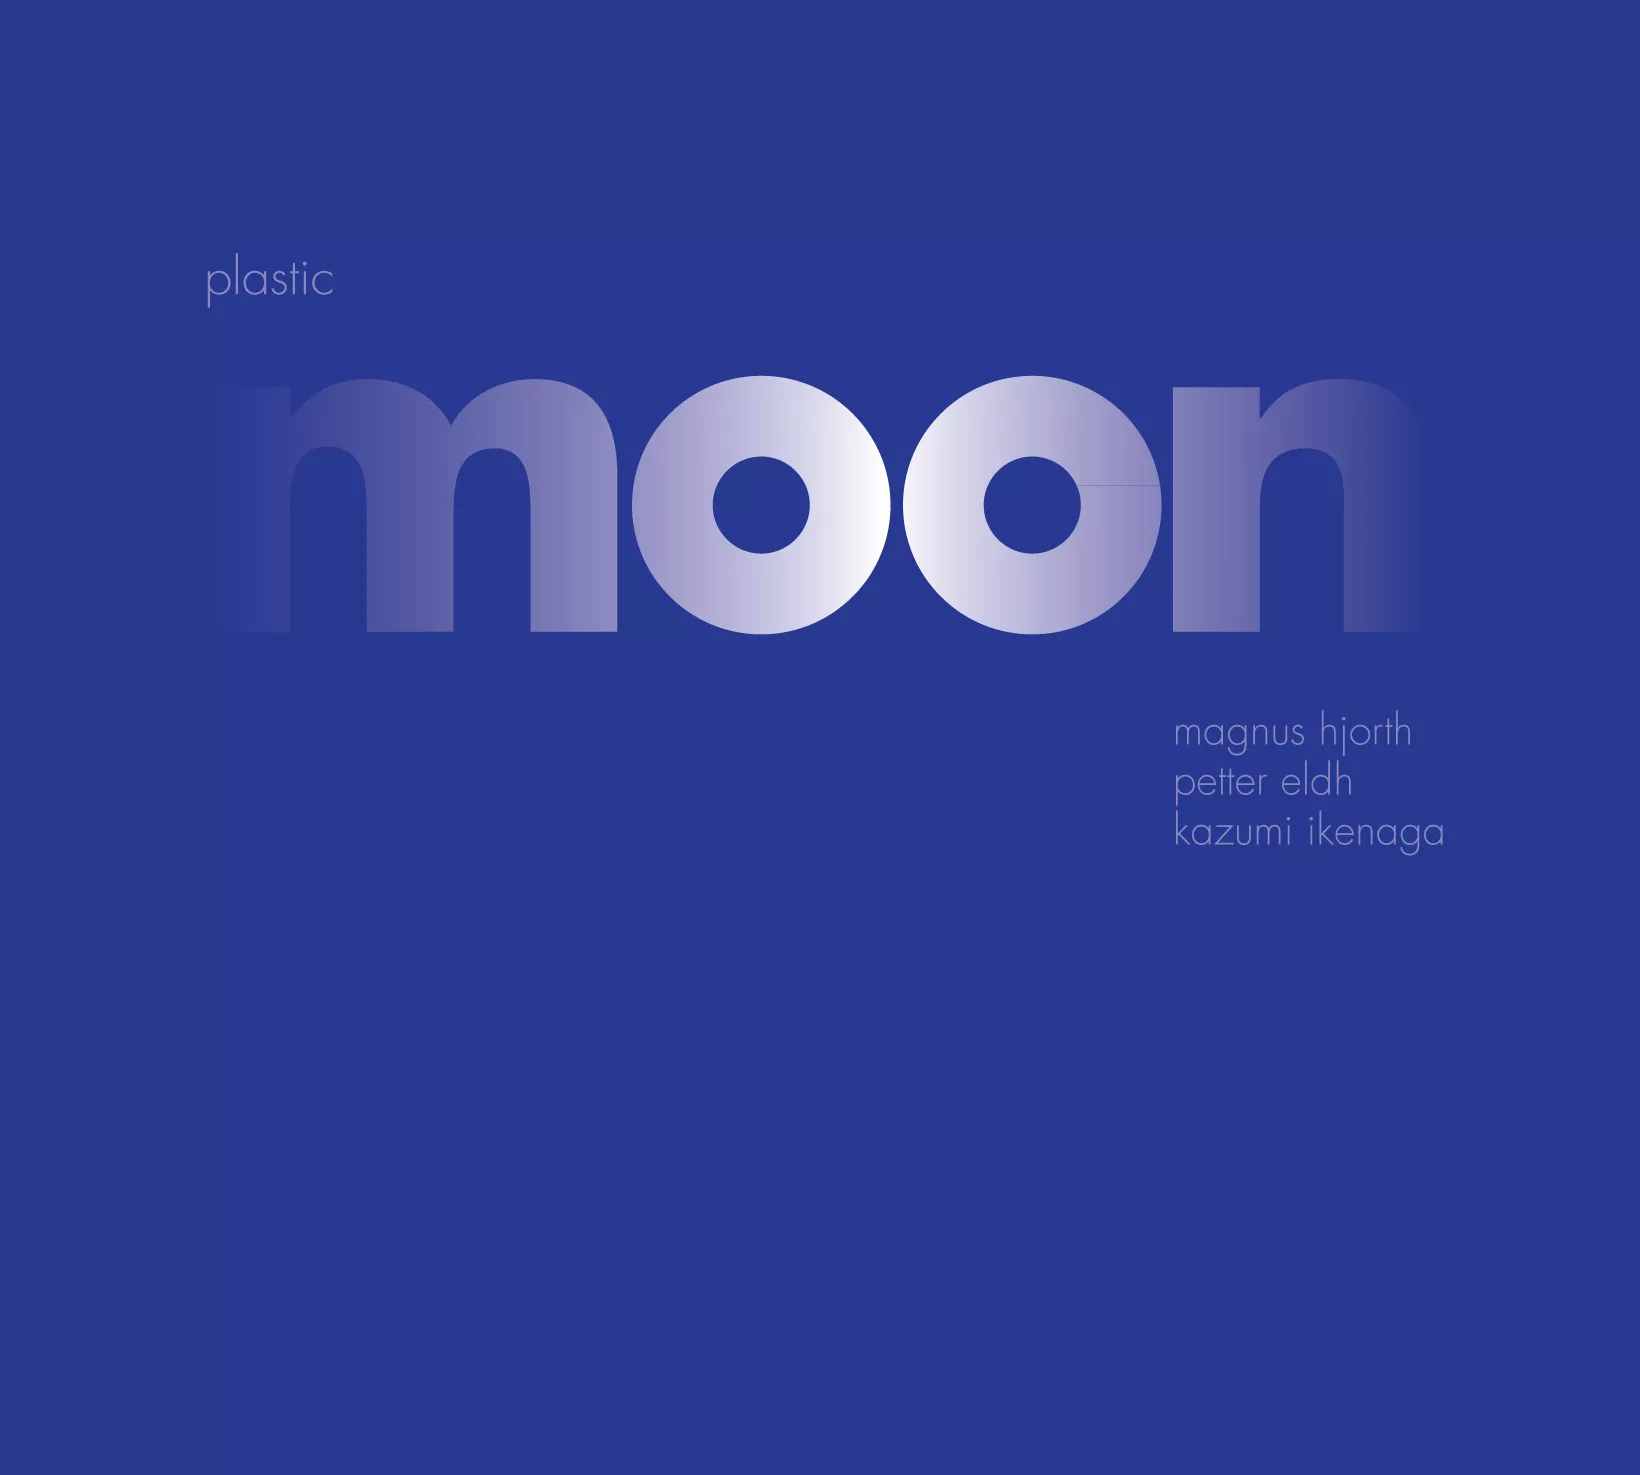 Plastic Moon - Magnus Hjorth, Petter Eld & Kazumi Ikenaga